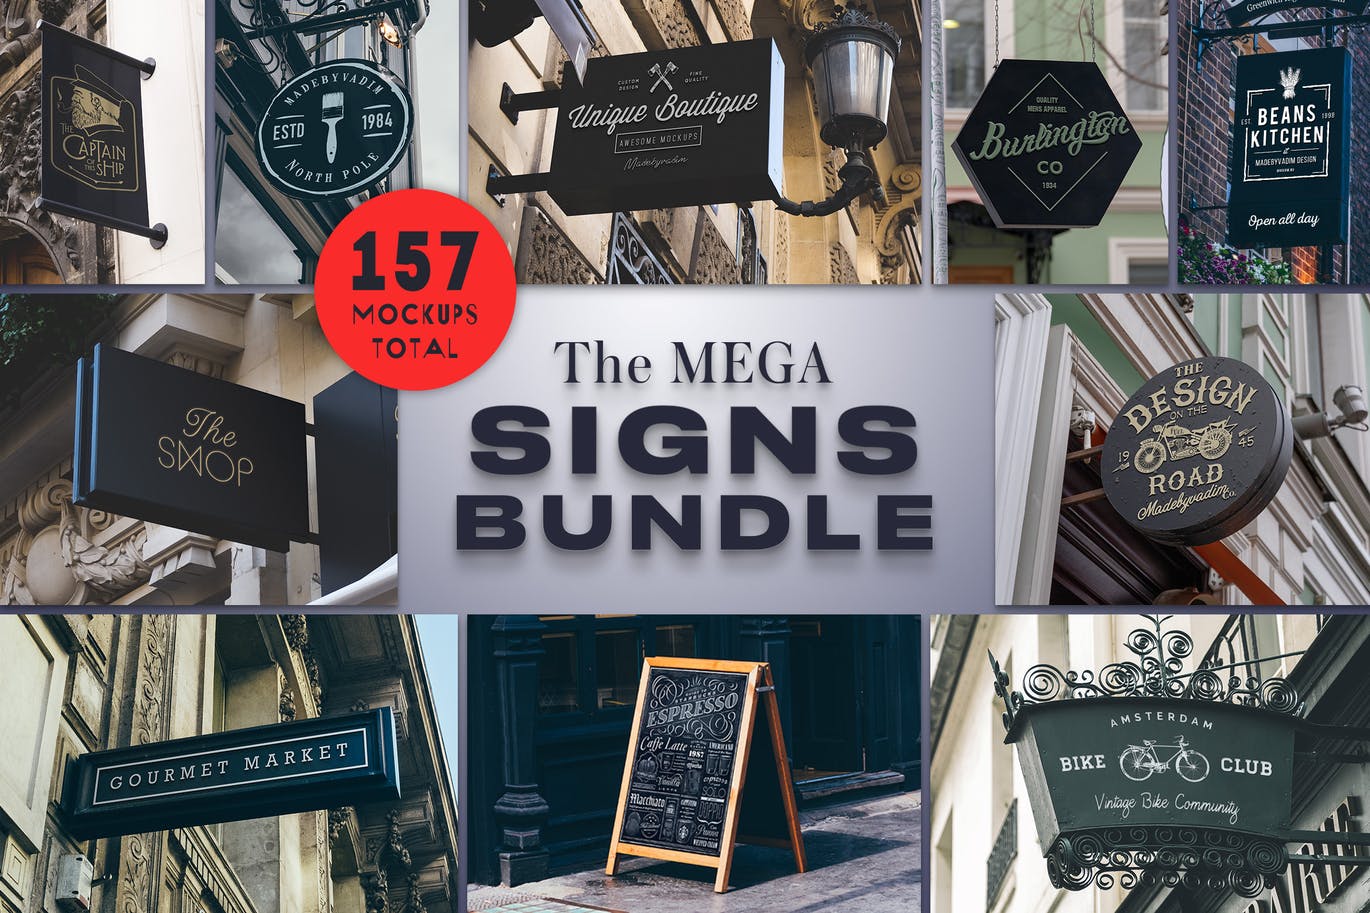 The Mega Signs Bundle: 155+ Mockups